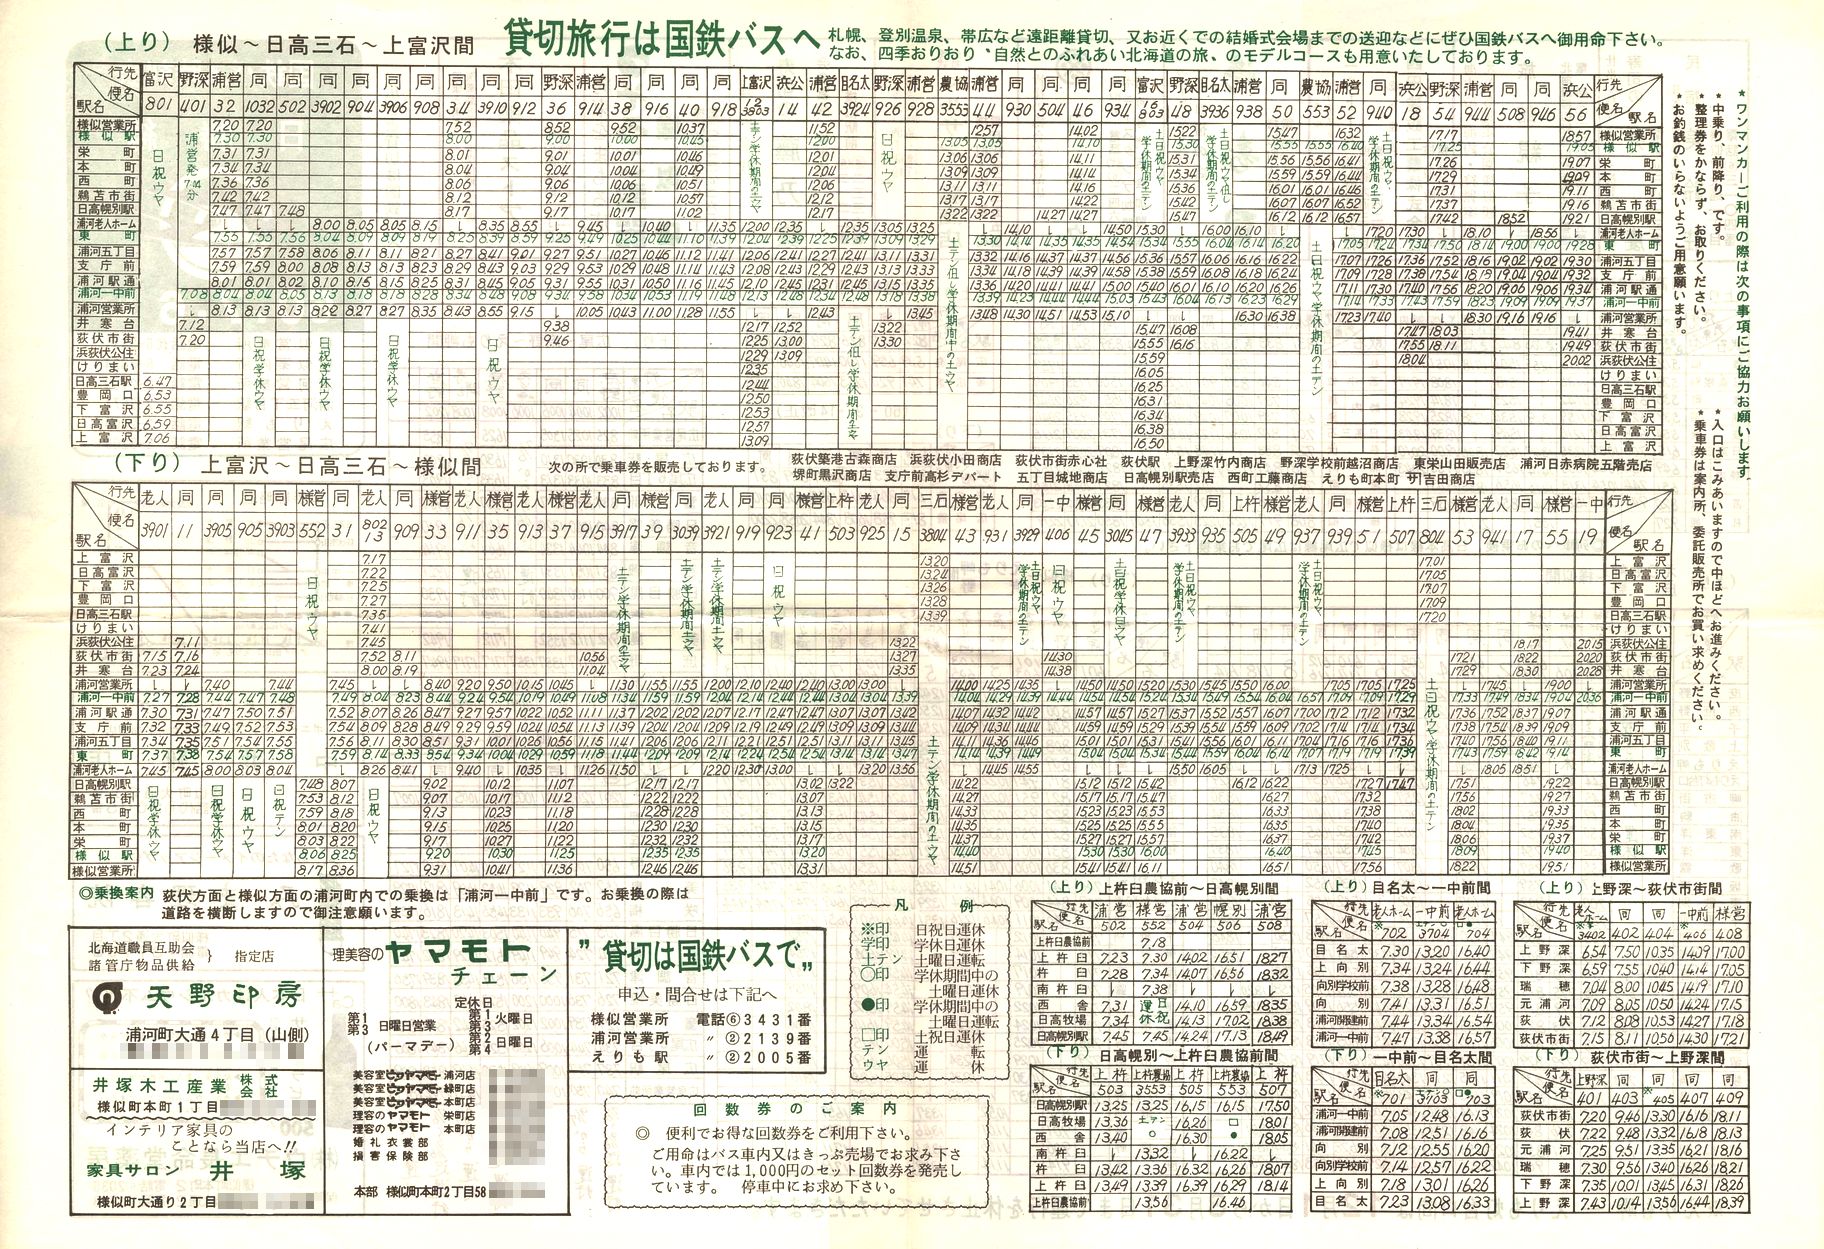 1985-07-06改正_国鉄バス_日勝線時刻表裏面